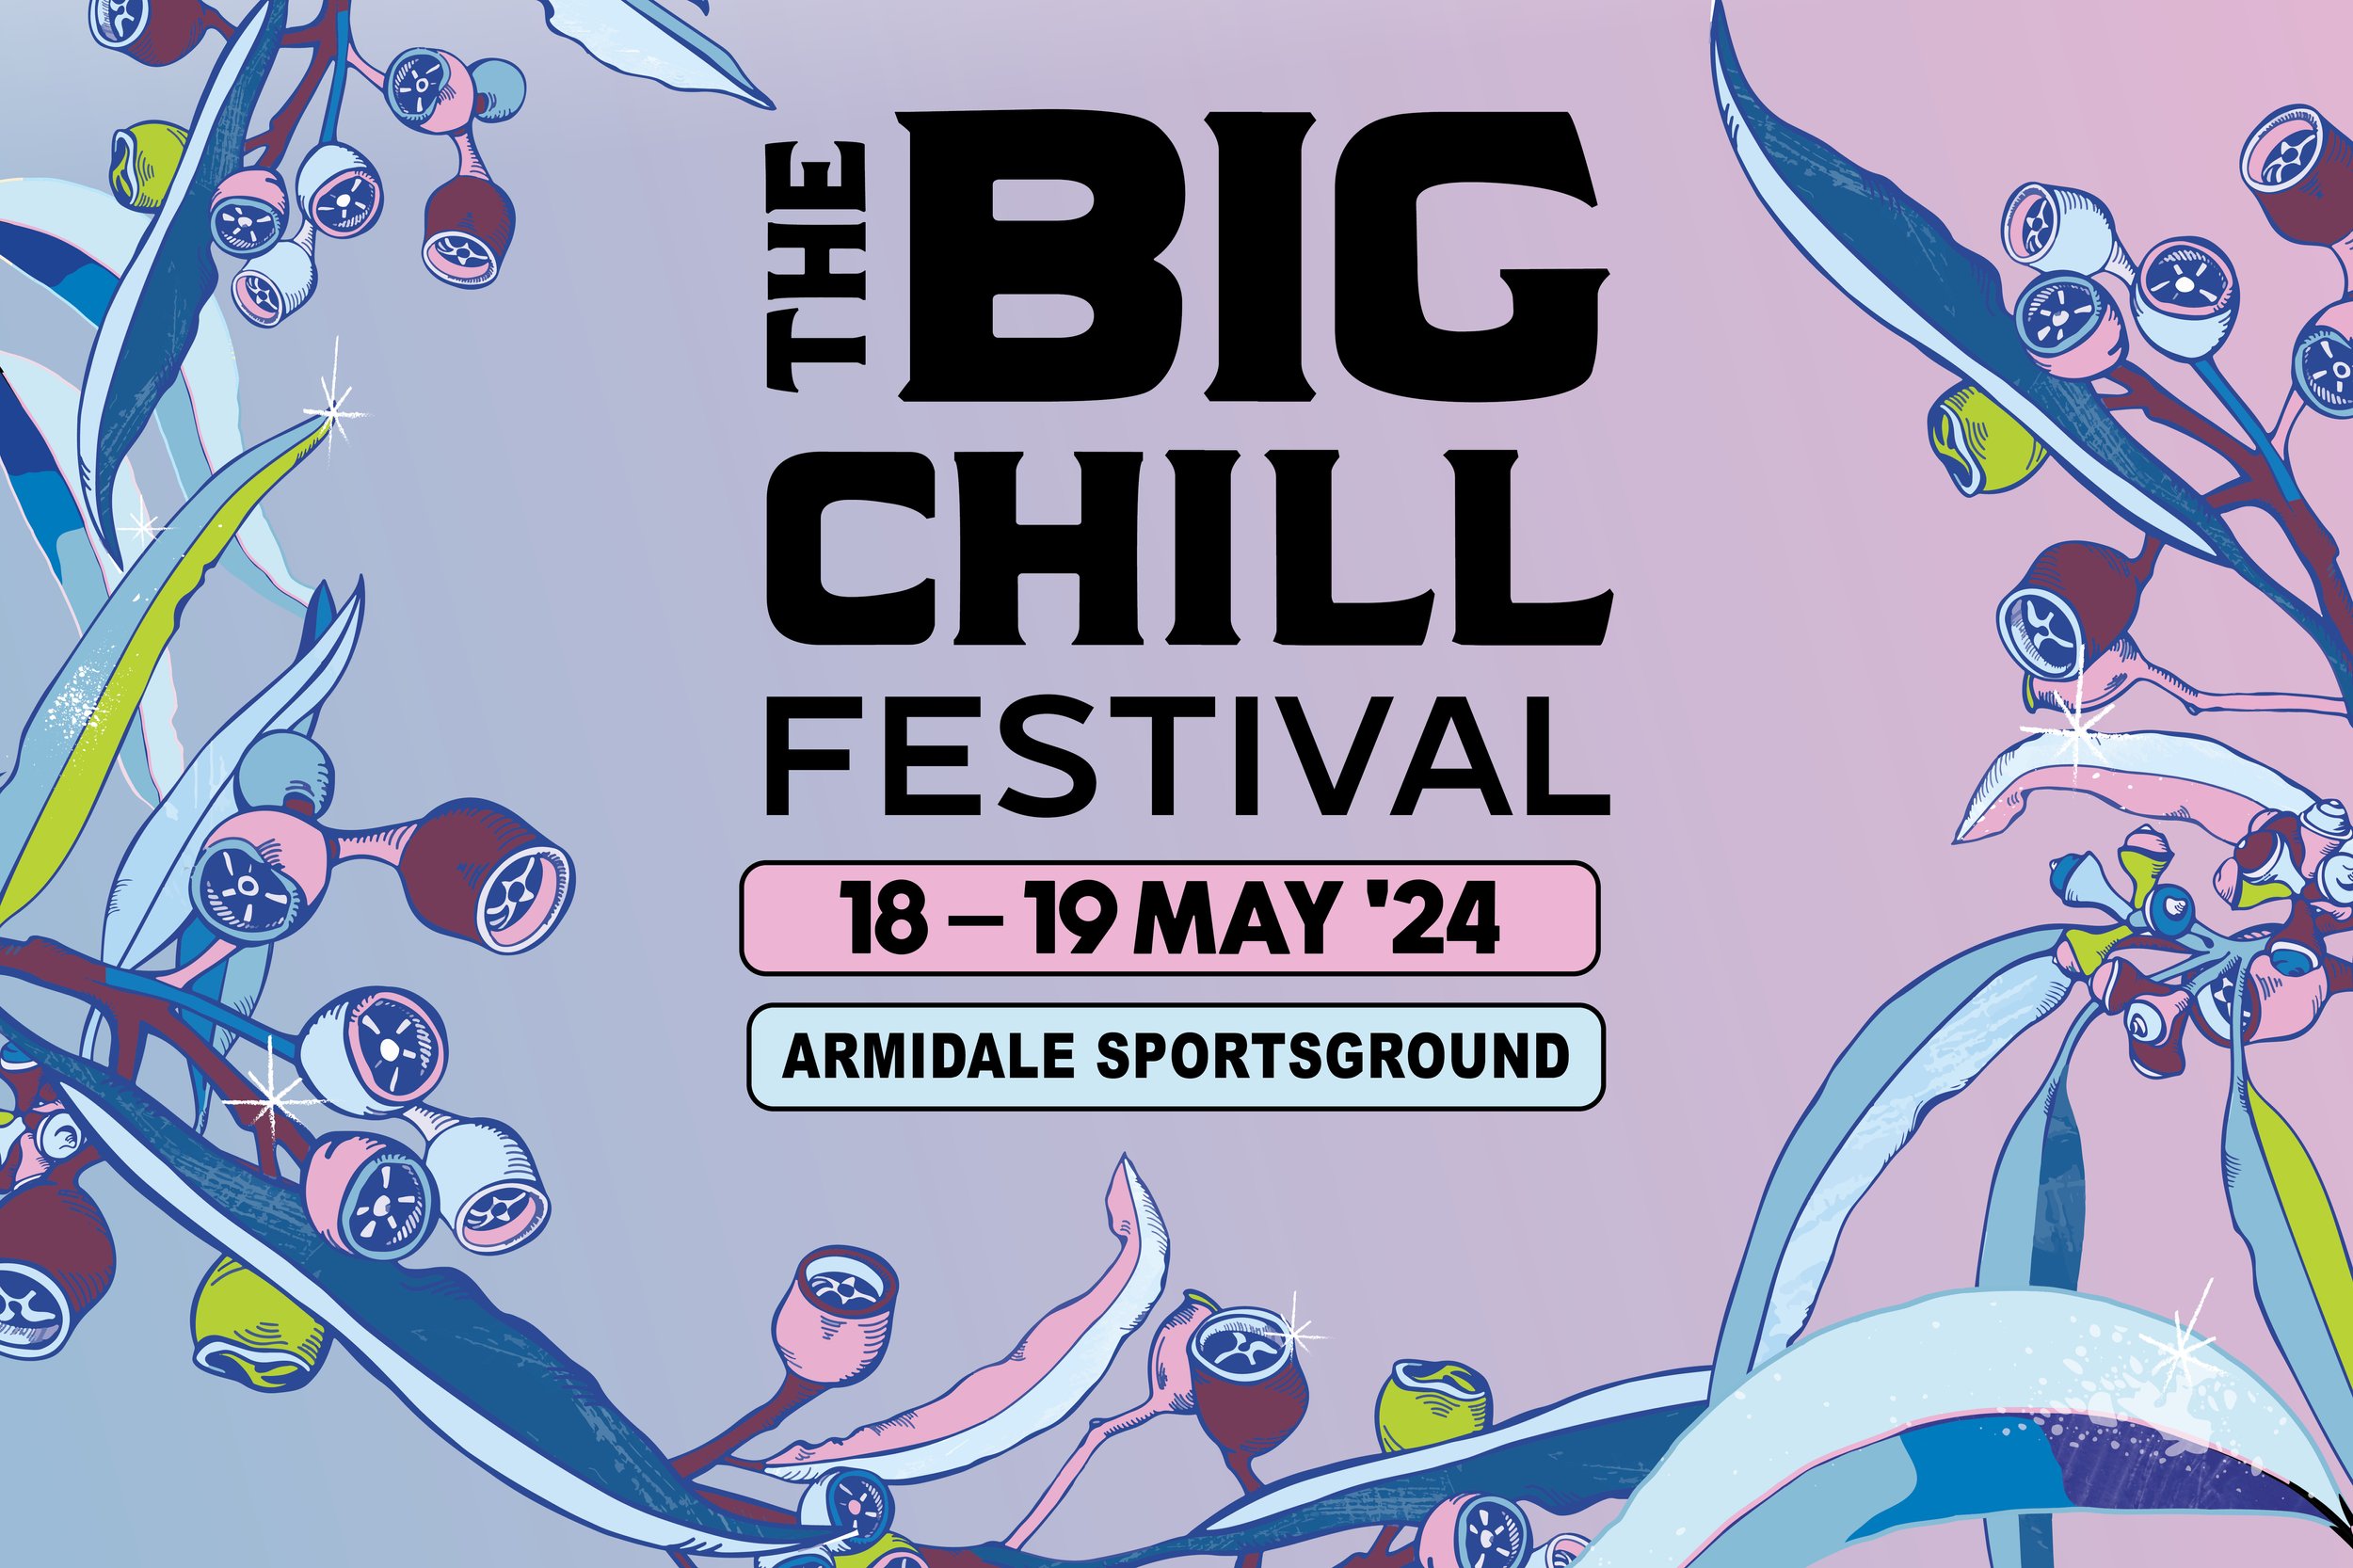 The Big Chill Festival